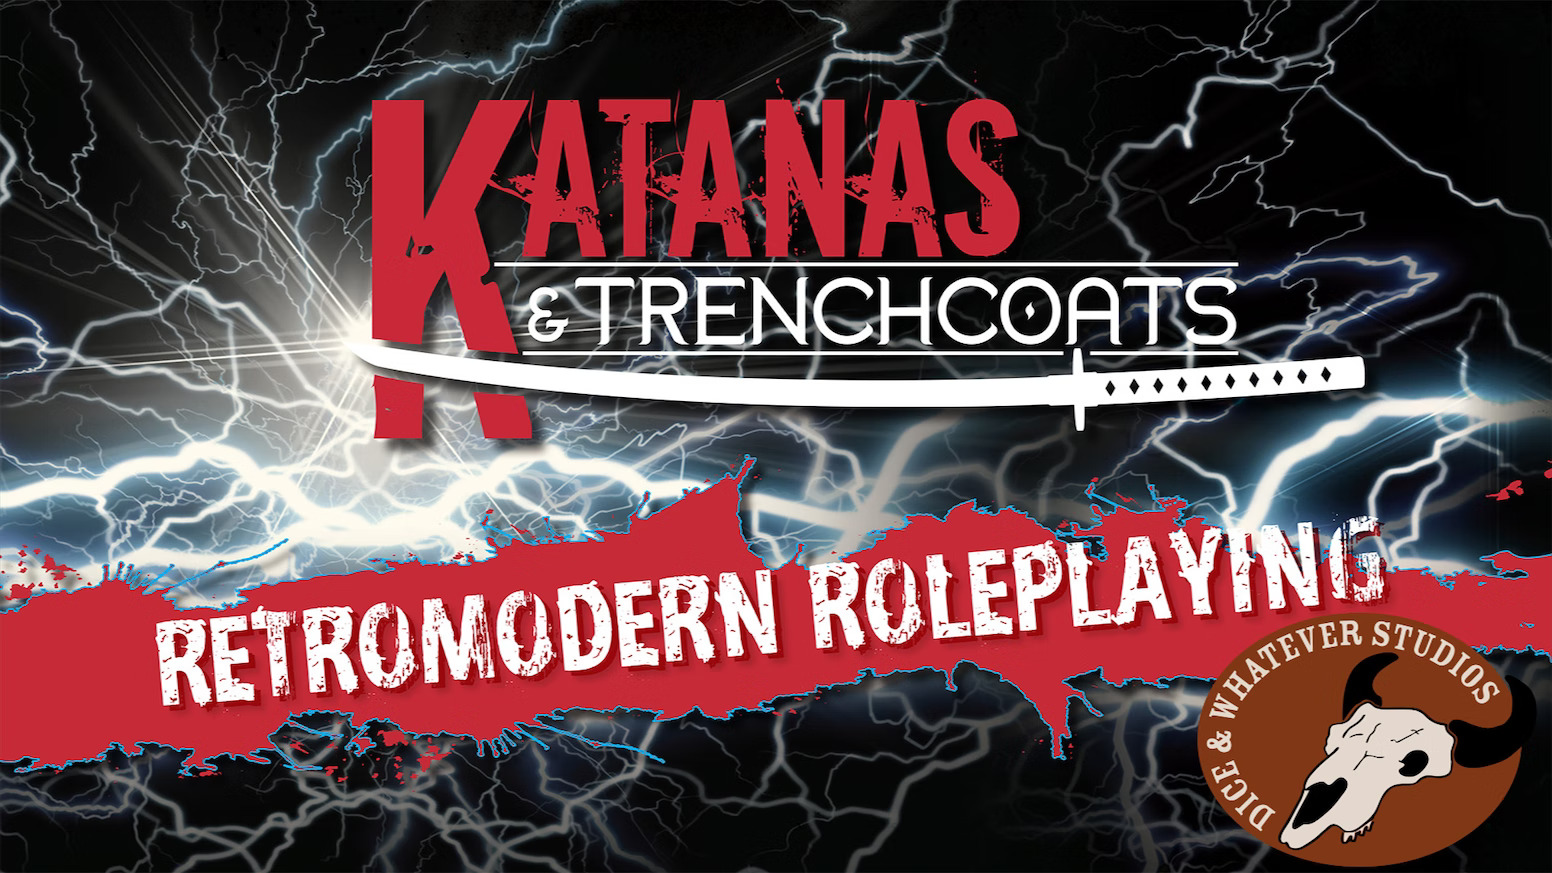 Katanas and Trenchcoats